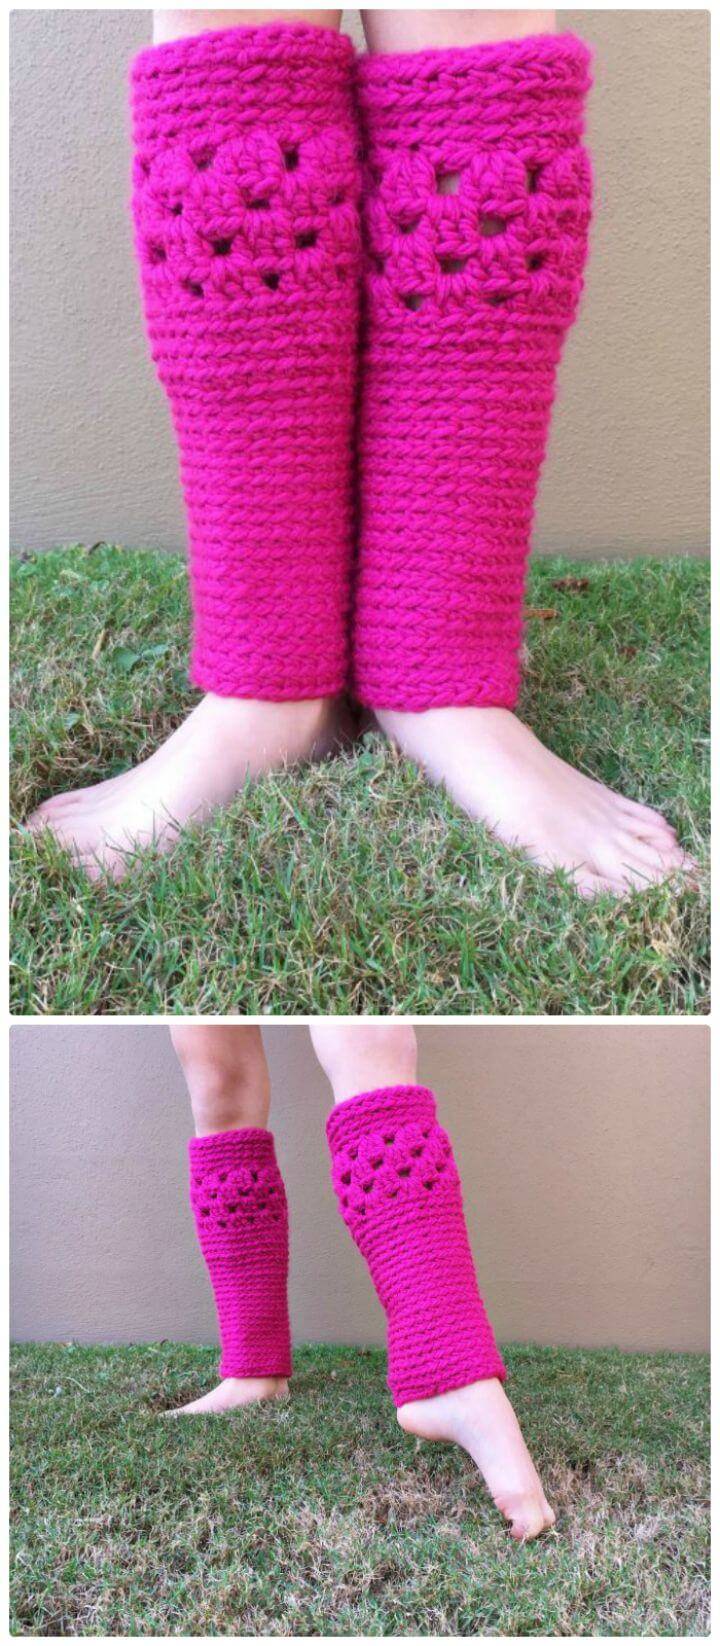 Crochet Leg Warmers Free Pattern